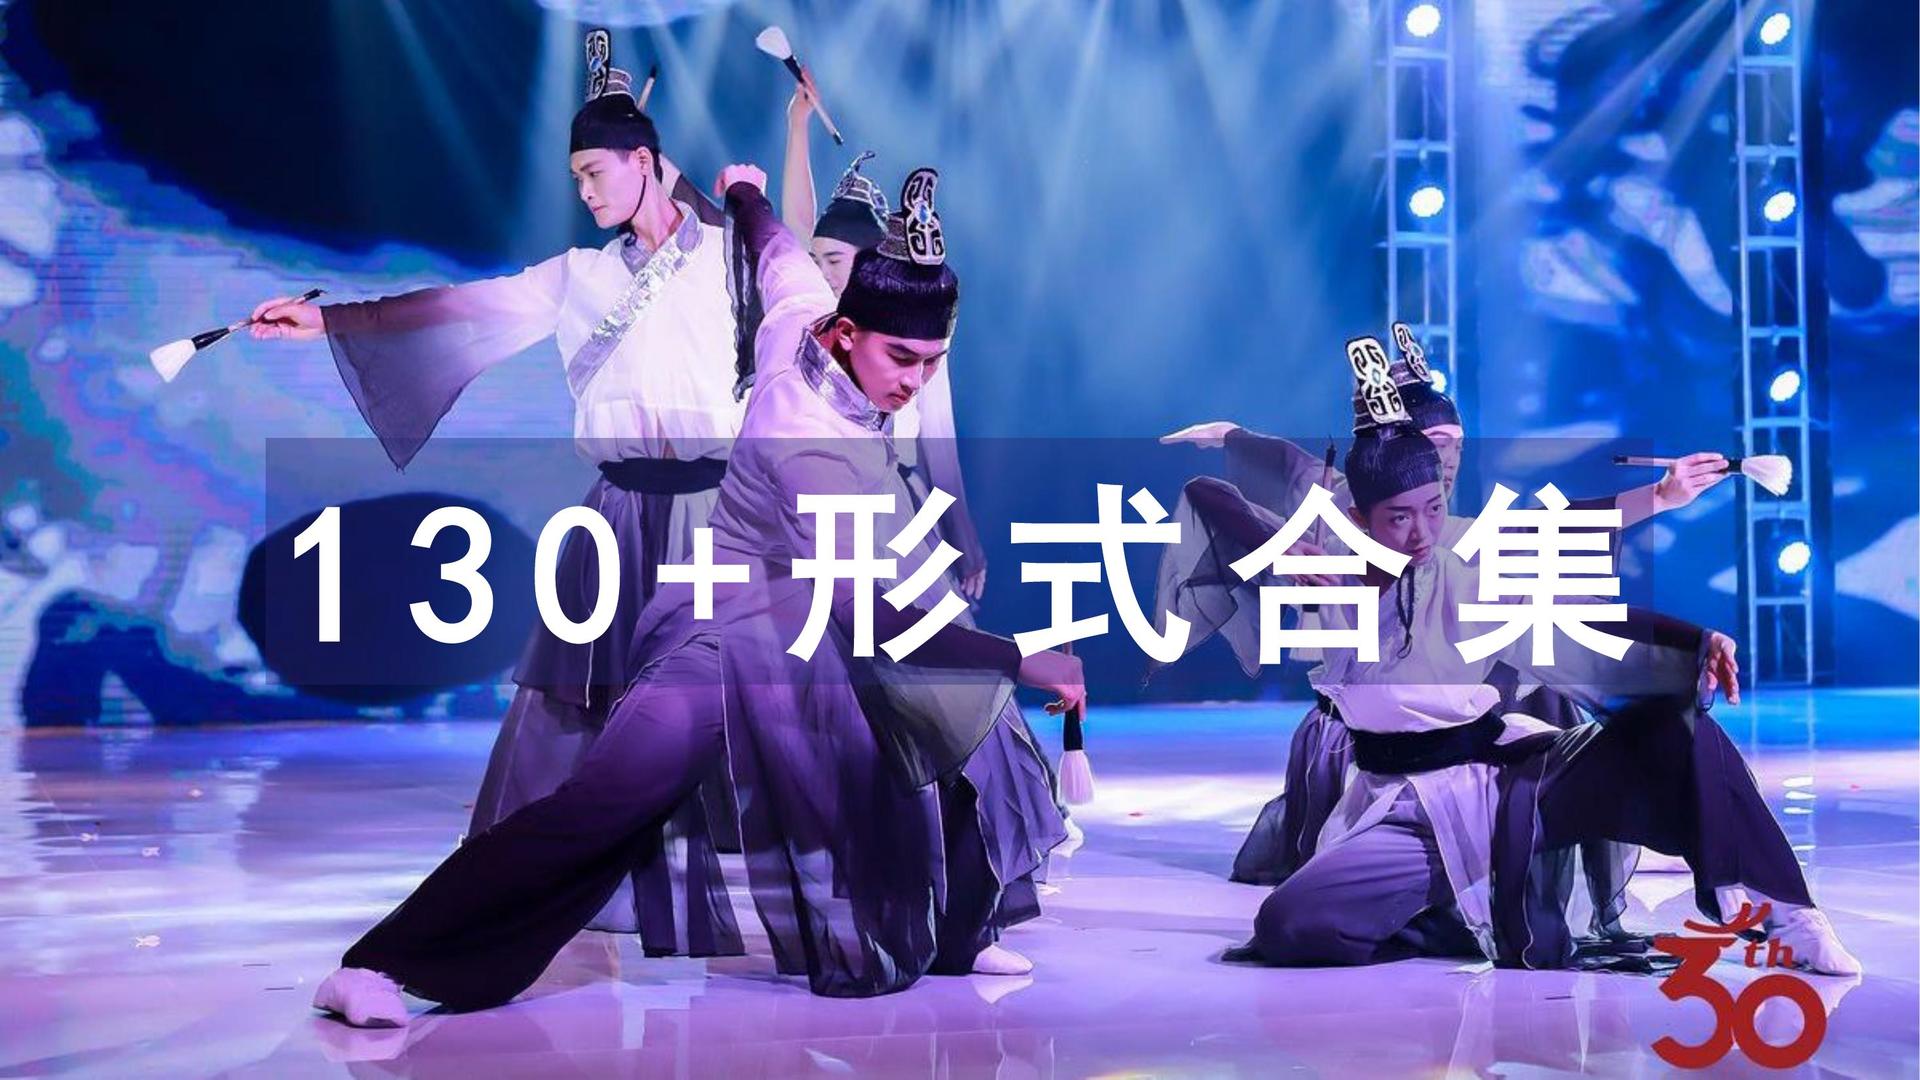 130+地产大型活动赛事发布会国风古典传统戏曲节目演绎创意形式合集